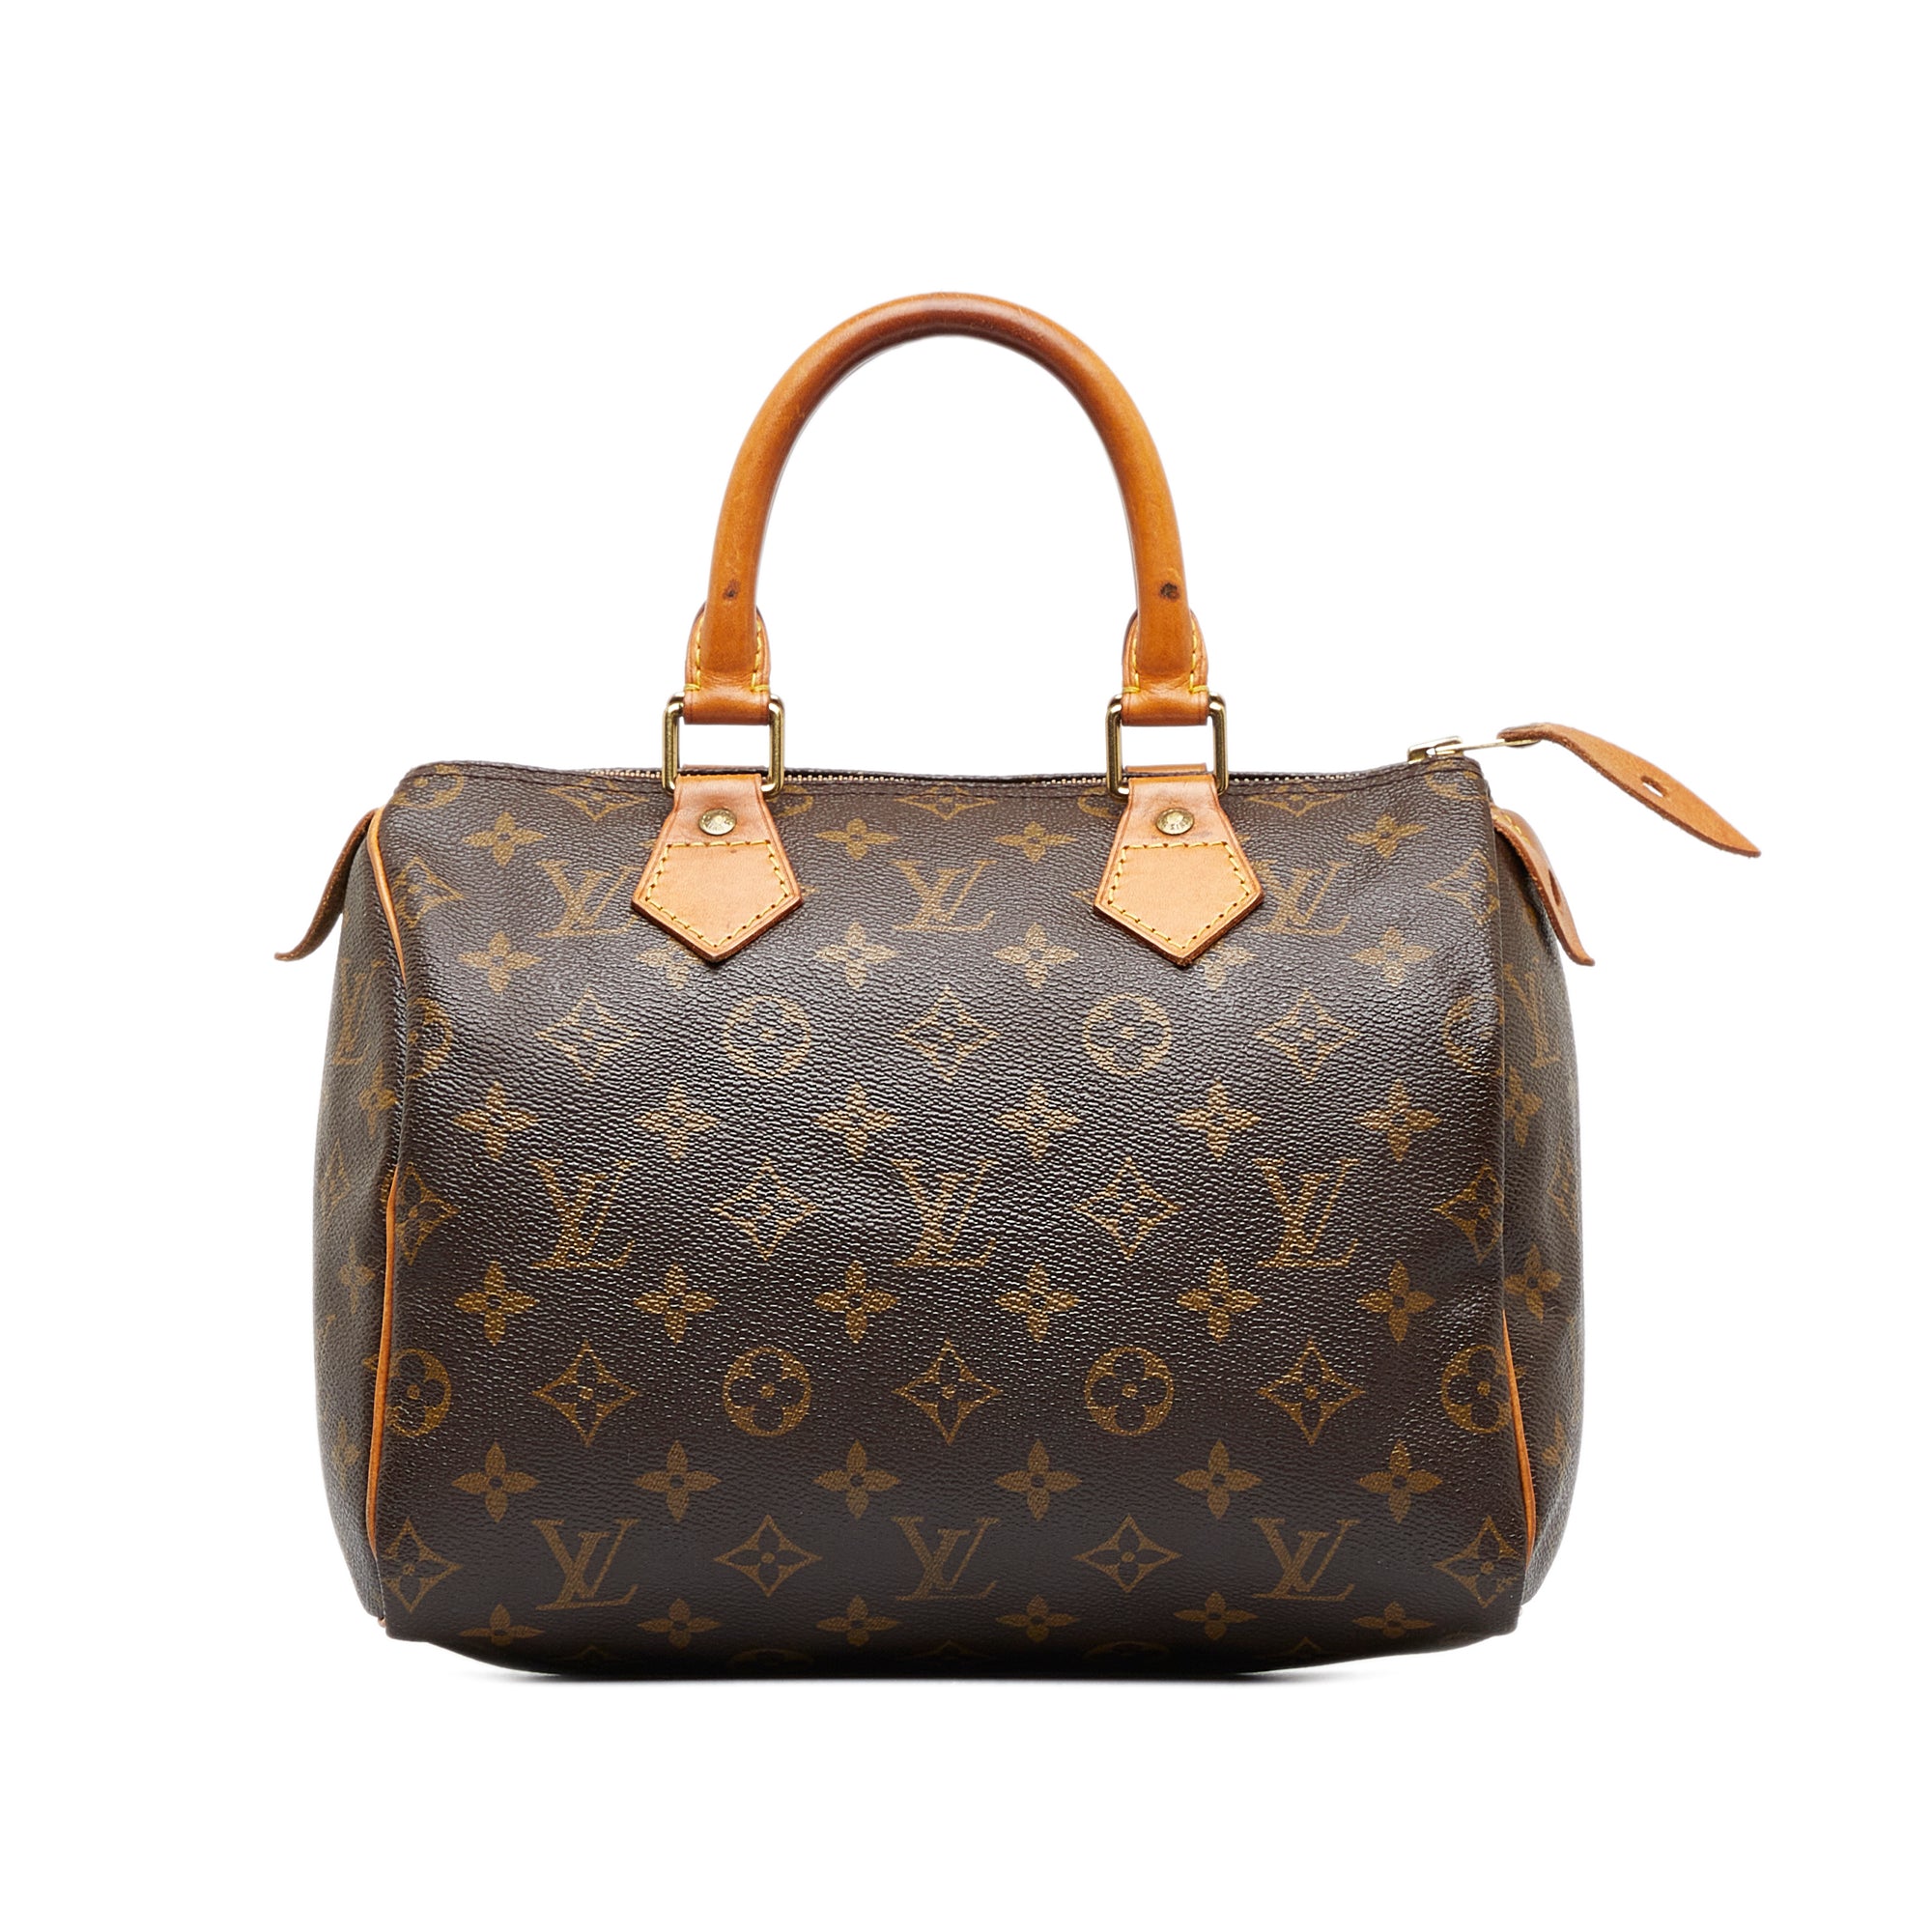 Louis Vuitton Damier Ebene Speedy 25 Boston Bag